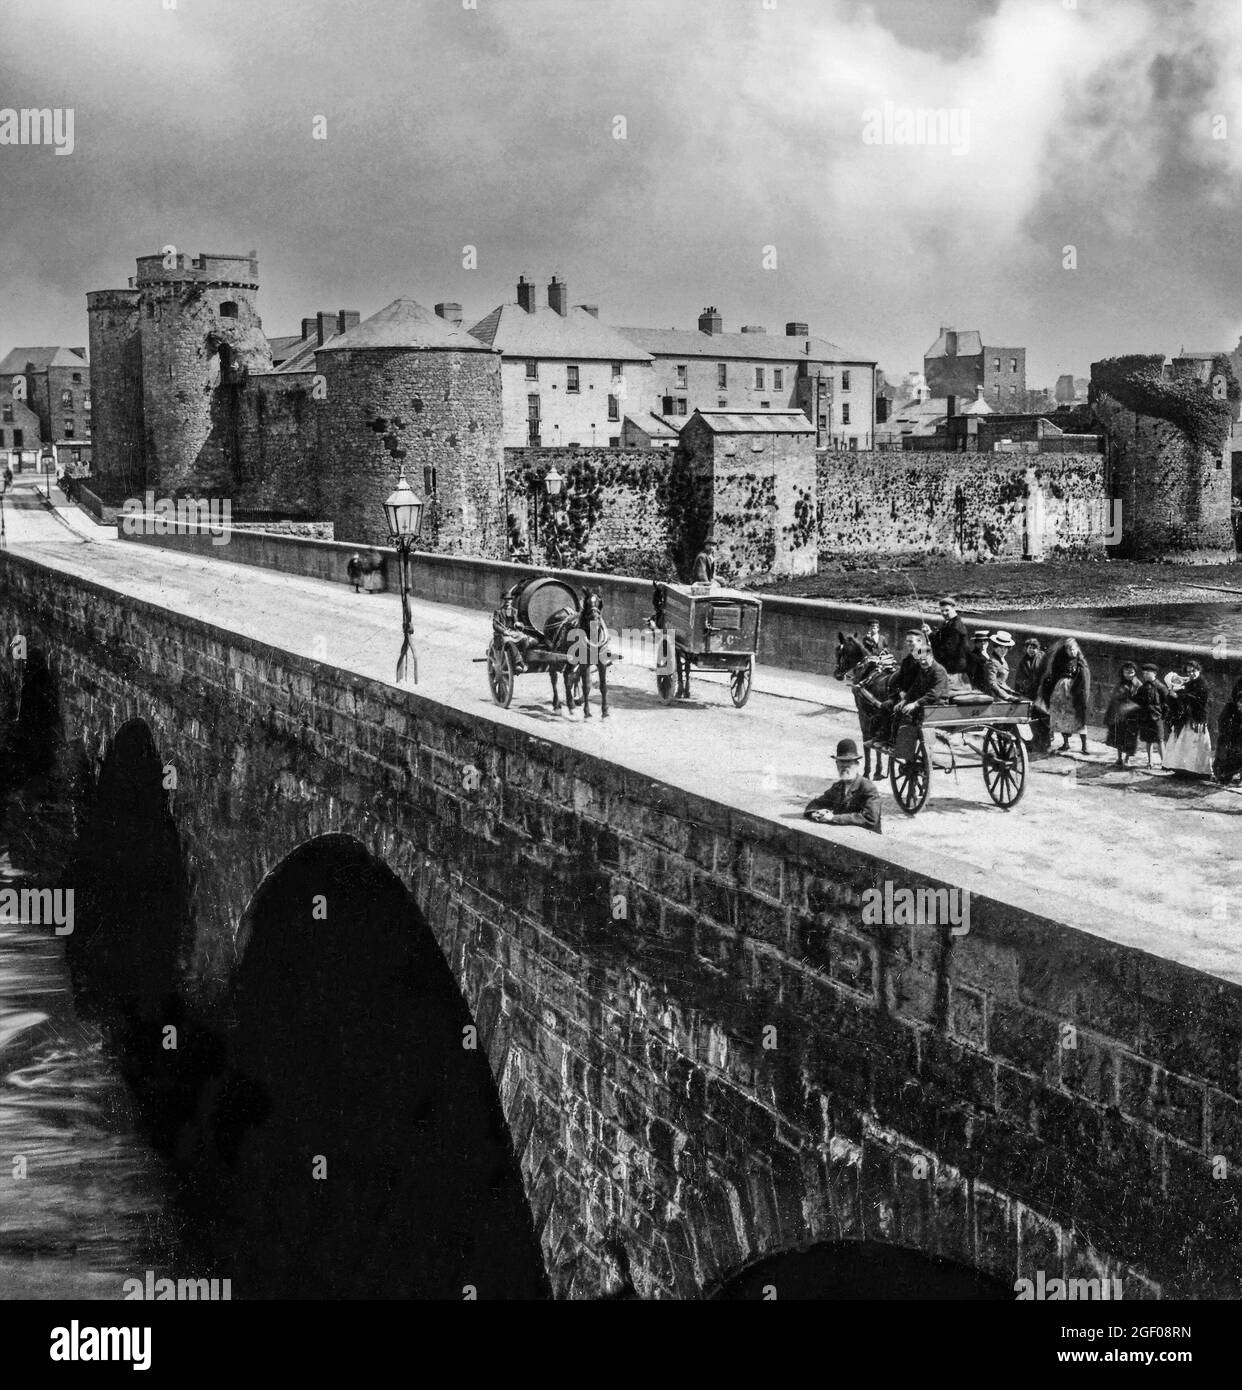 Una vista dei primi del XX secolo di veicoli trainati da cavalli e persone sul Thormond Bridge sul fiume Shannon, dominato dal 13 ° secolo King John's Castle, Città di Limerick, Irlanda Foto Stock